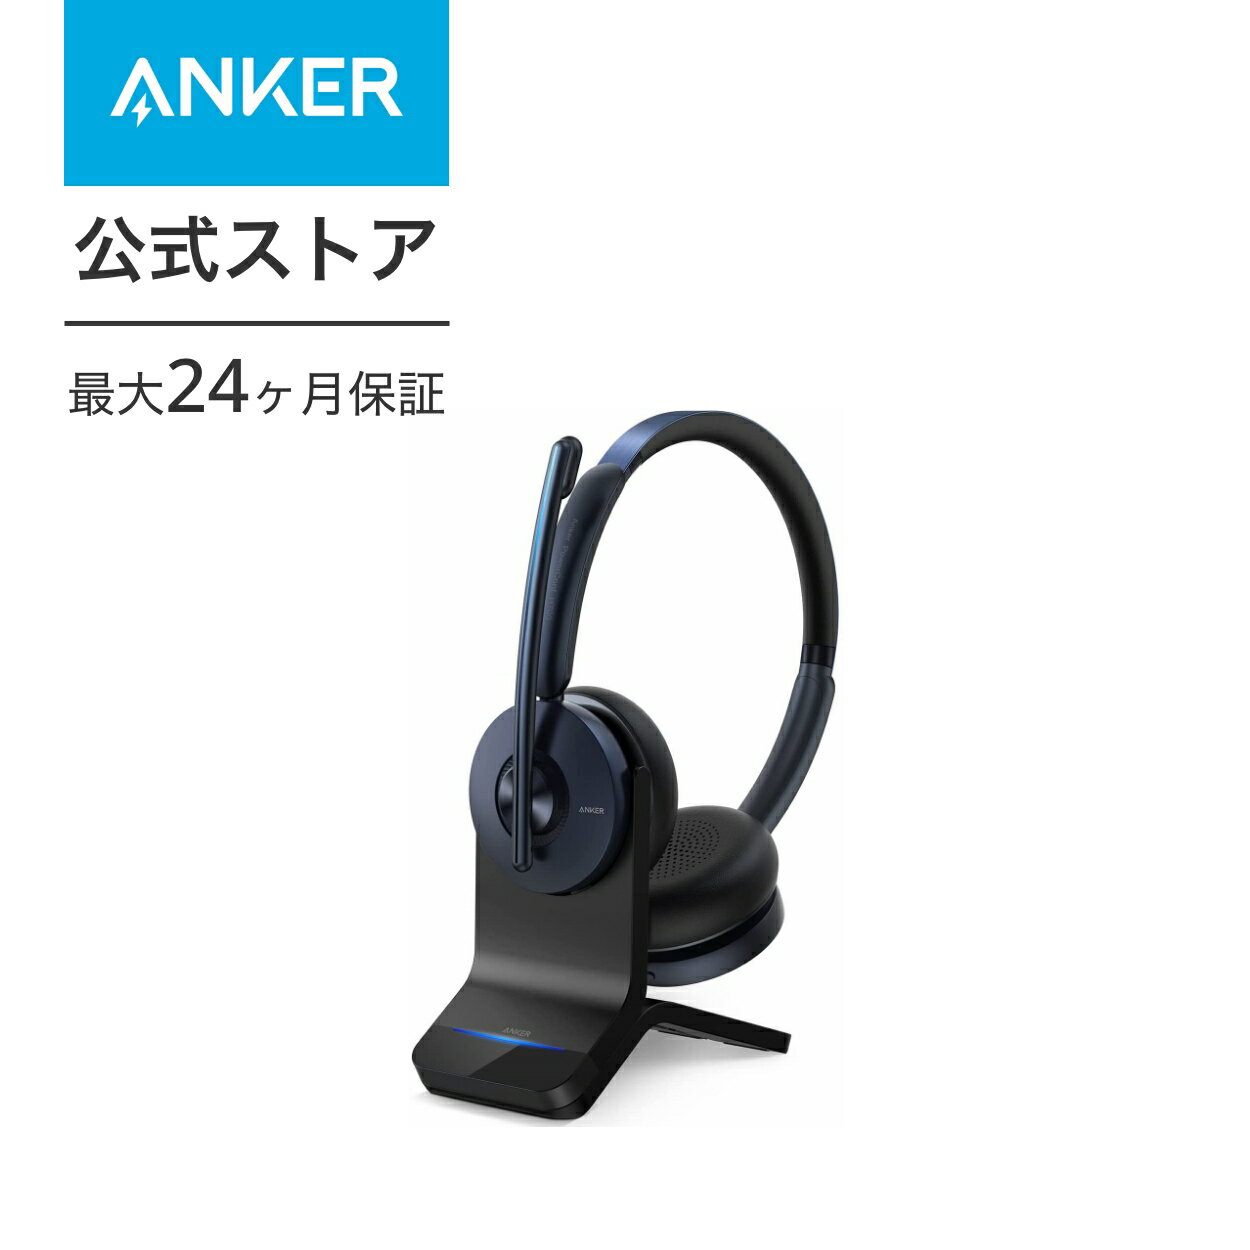 【あす楽対応】Anker PowerConf H700（ワイ